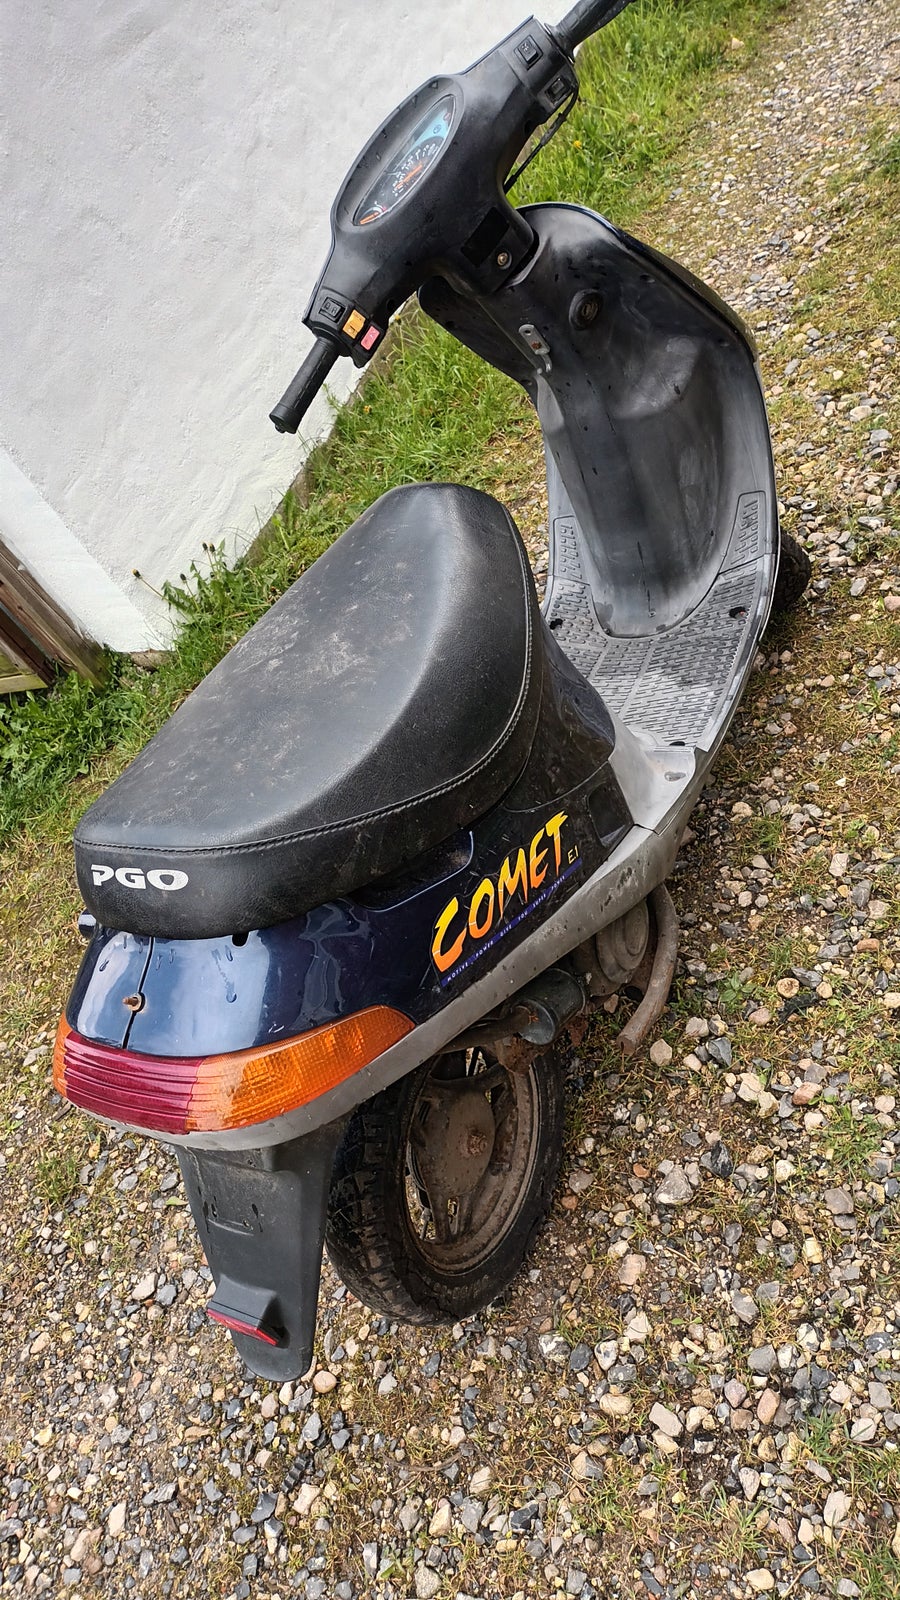 PGO Pgo comet 45 scooter, 2005